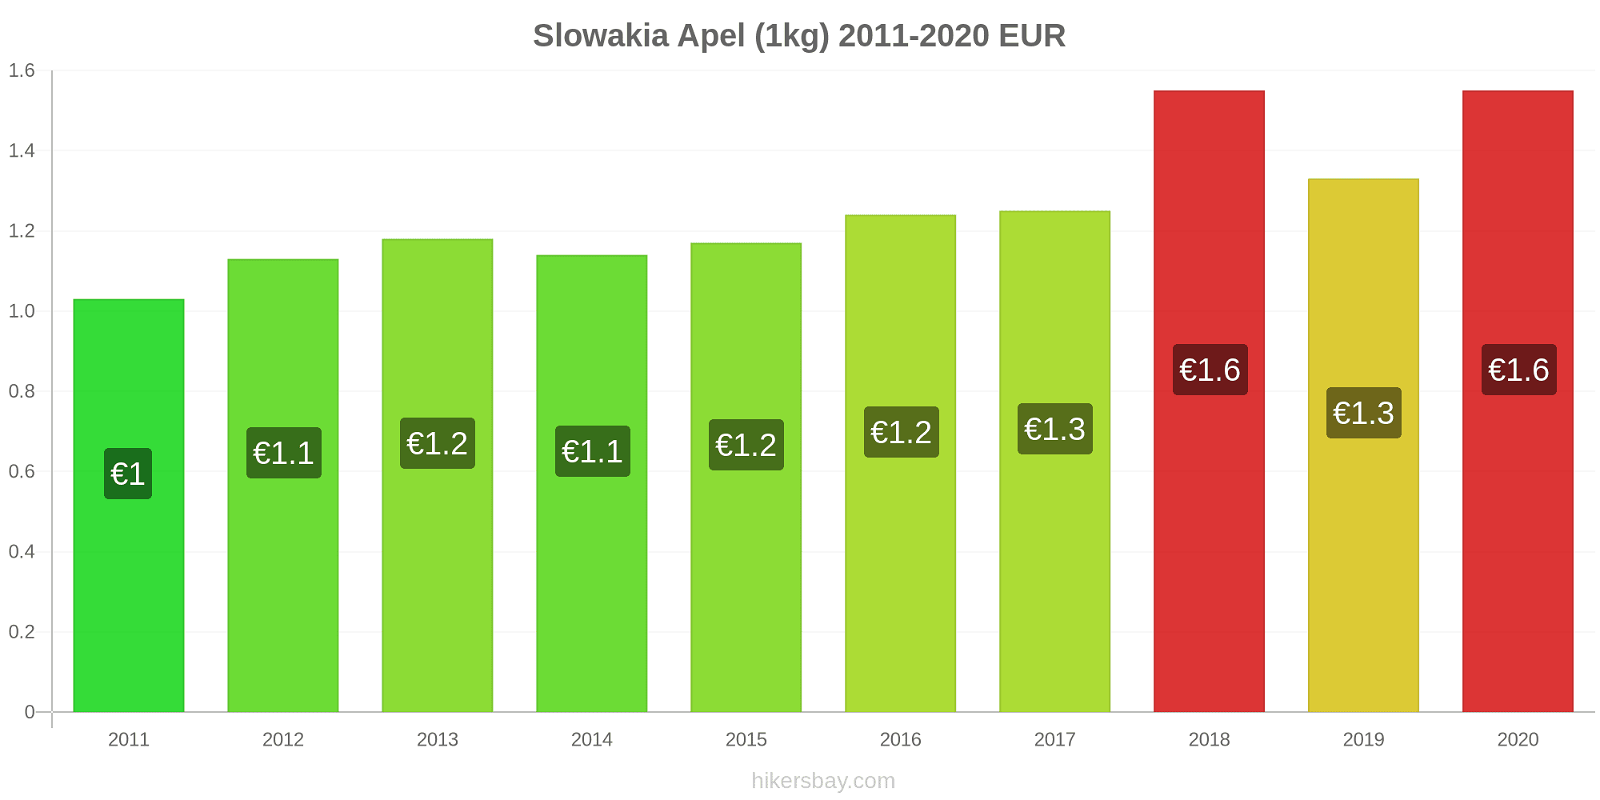 Slowakia perubahan harga Apel (1kg) hikersbay.com